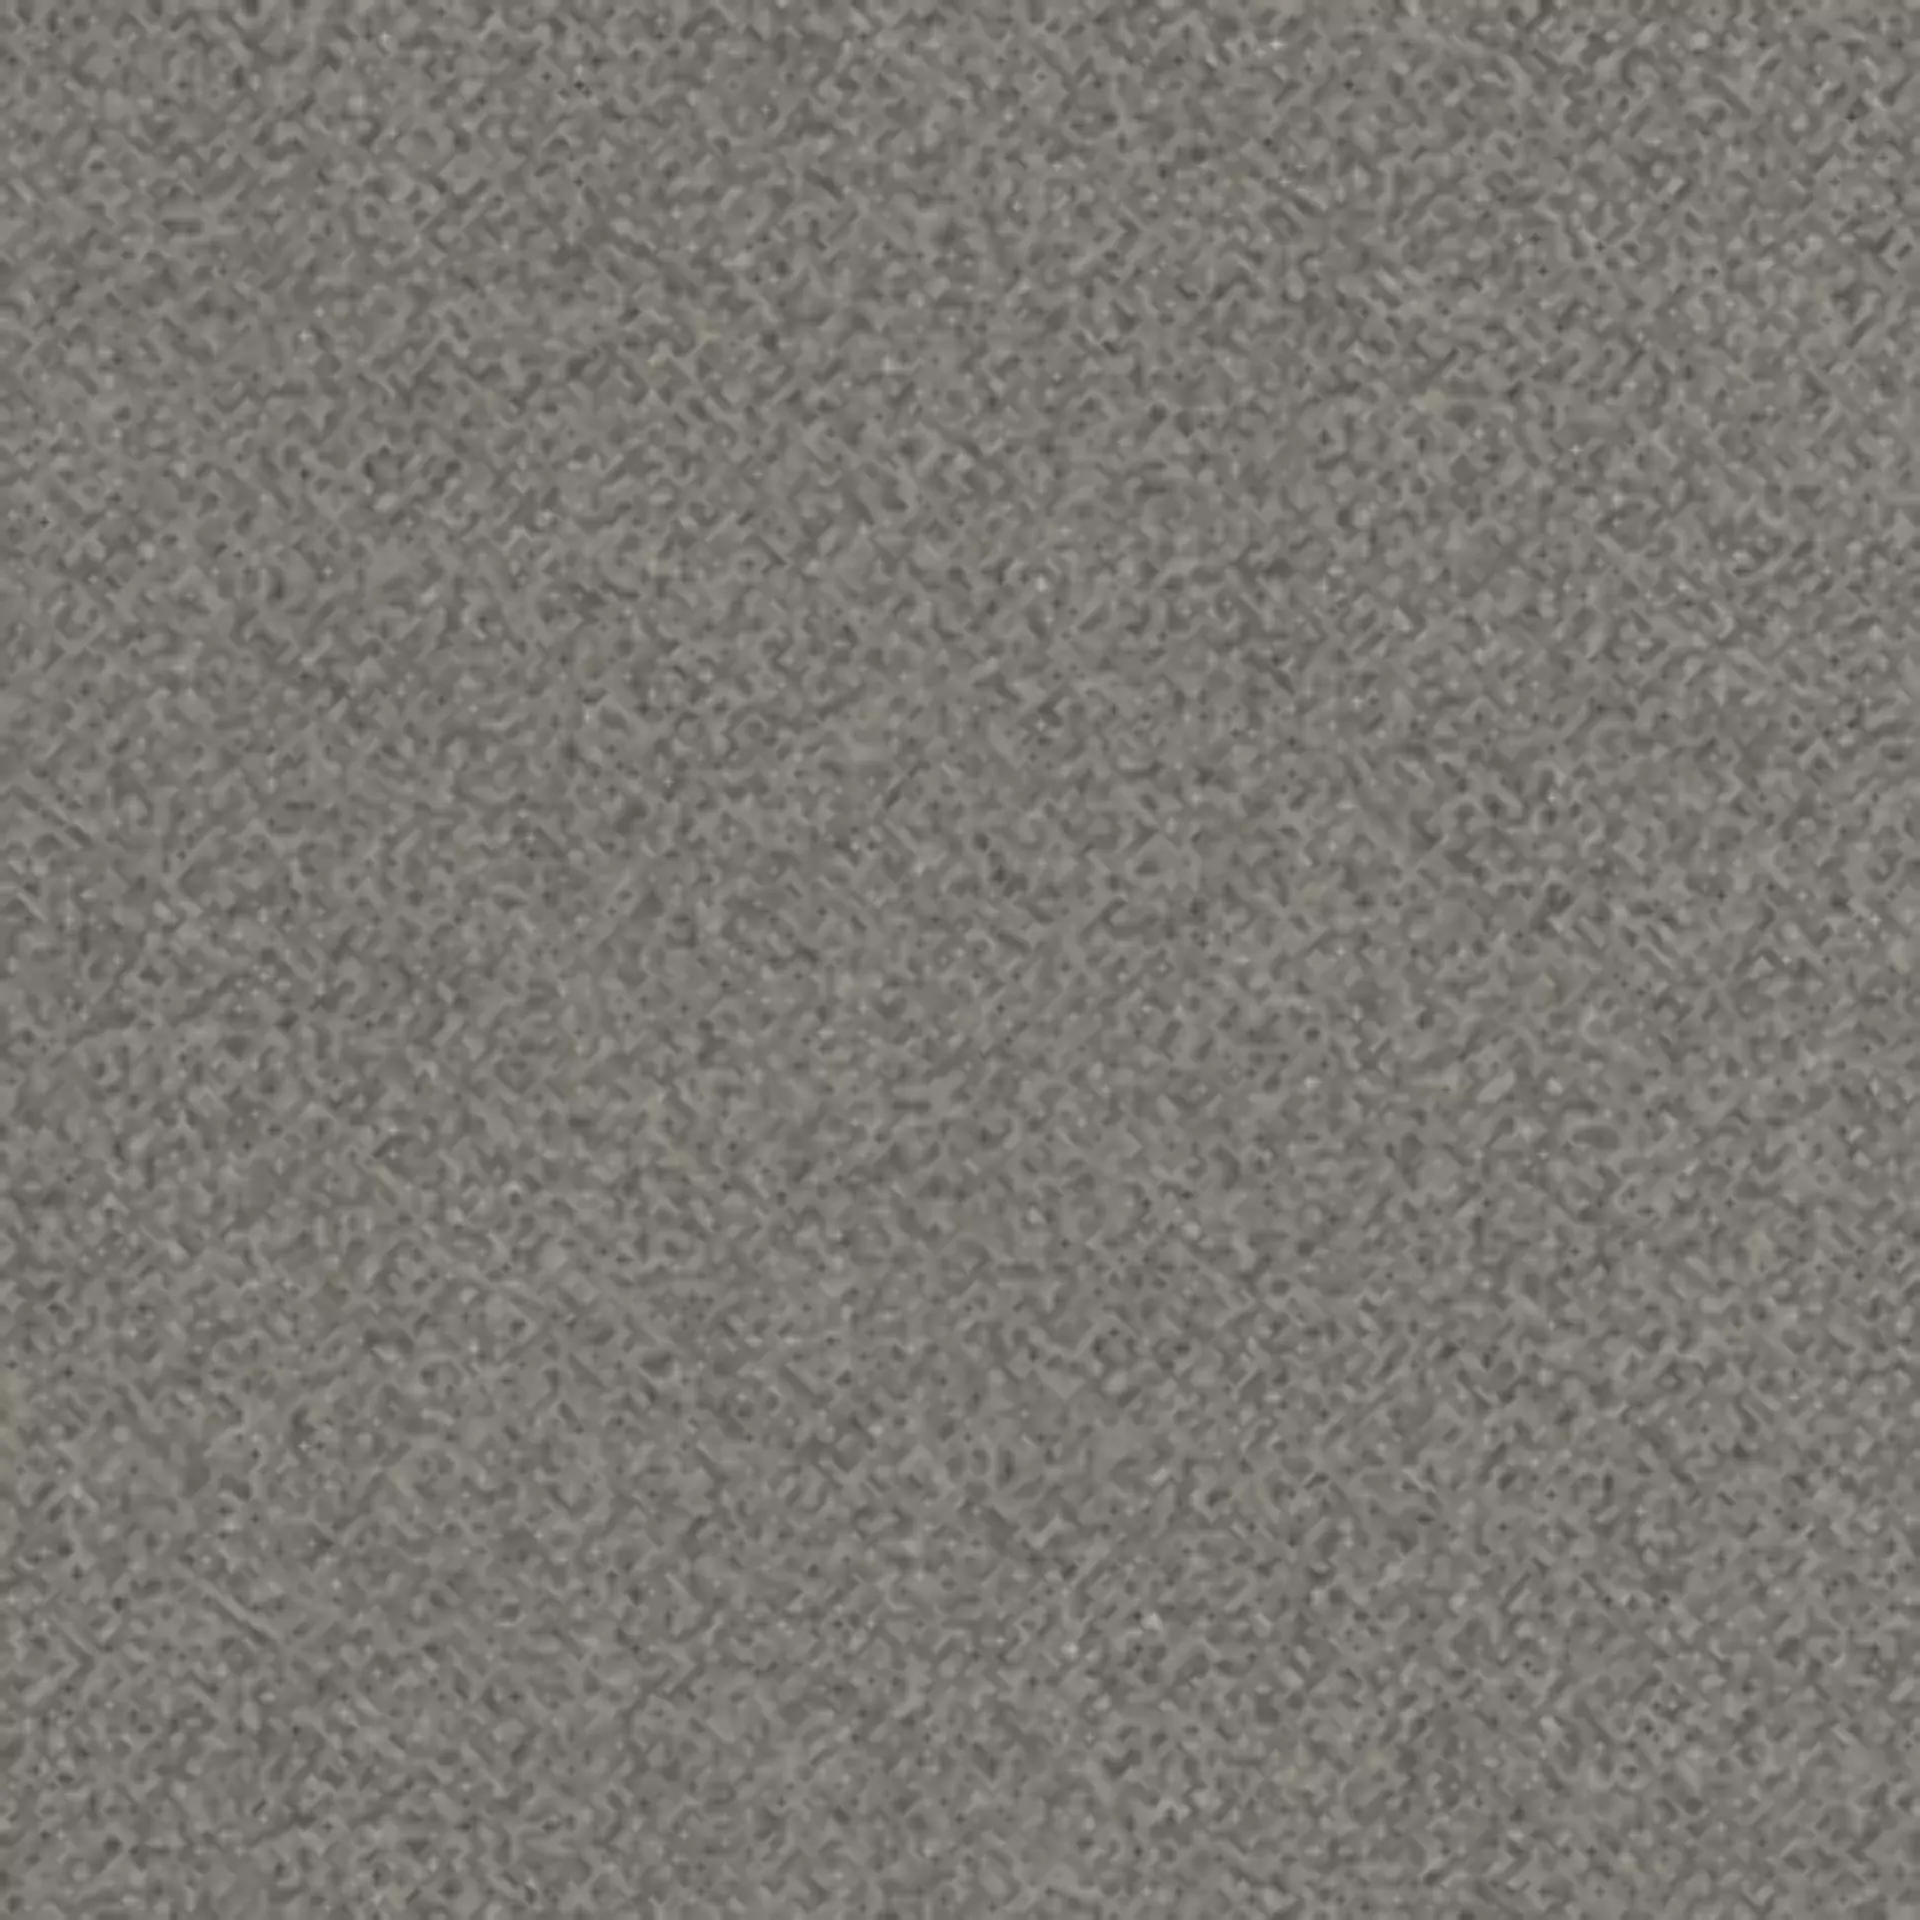 Wandfliese,Bodenfliese Villeroy & Boch Unit Three Graphit Matt Graphit 2020-GT50 matt 20x20cm 13mm